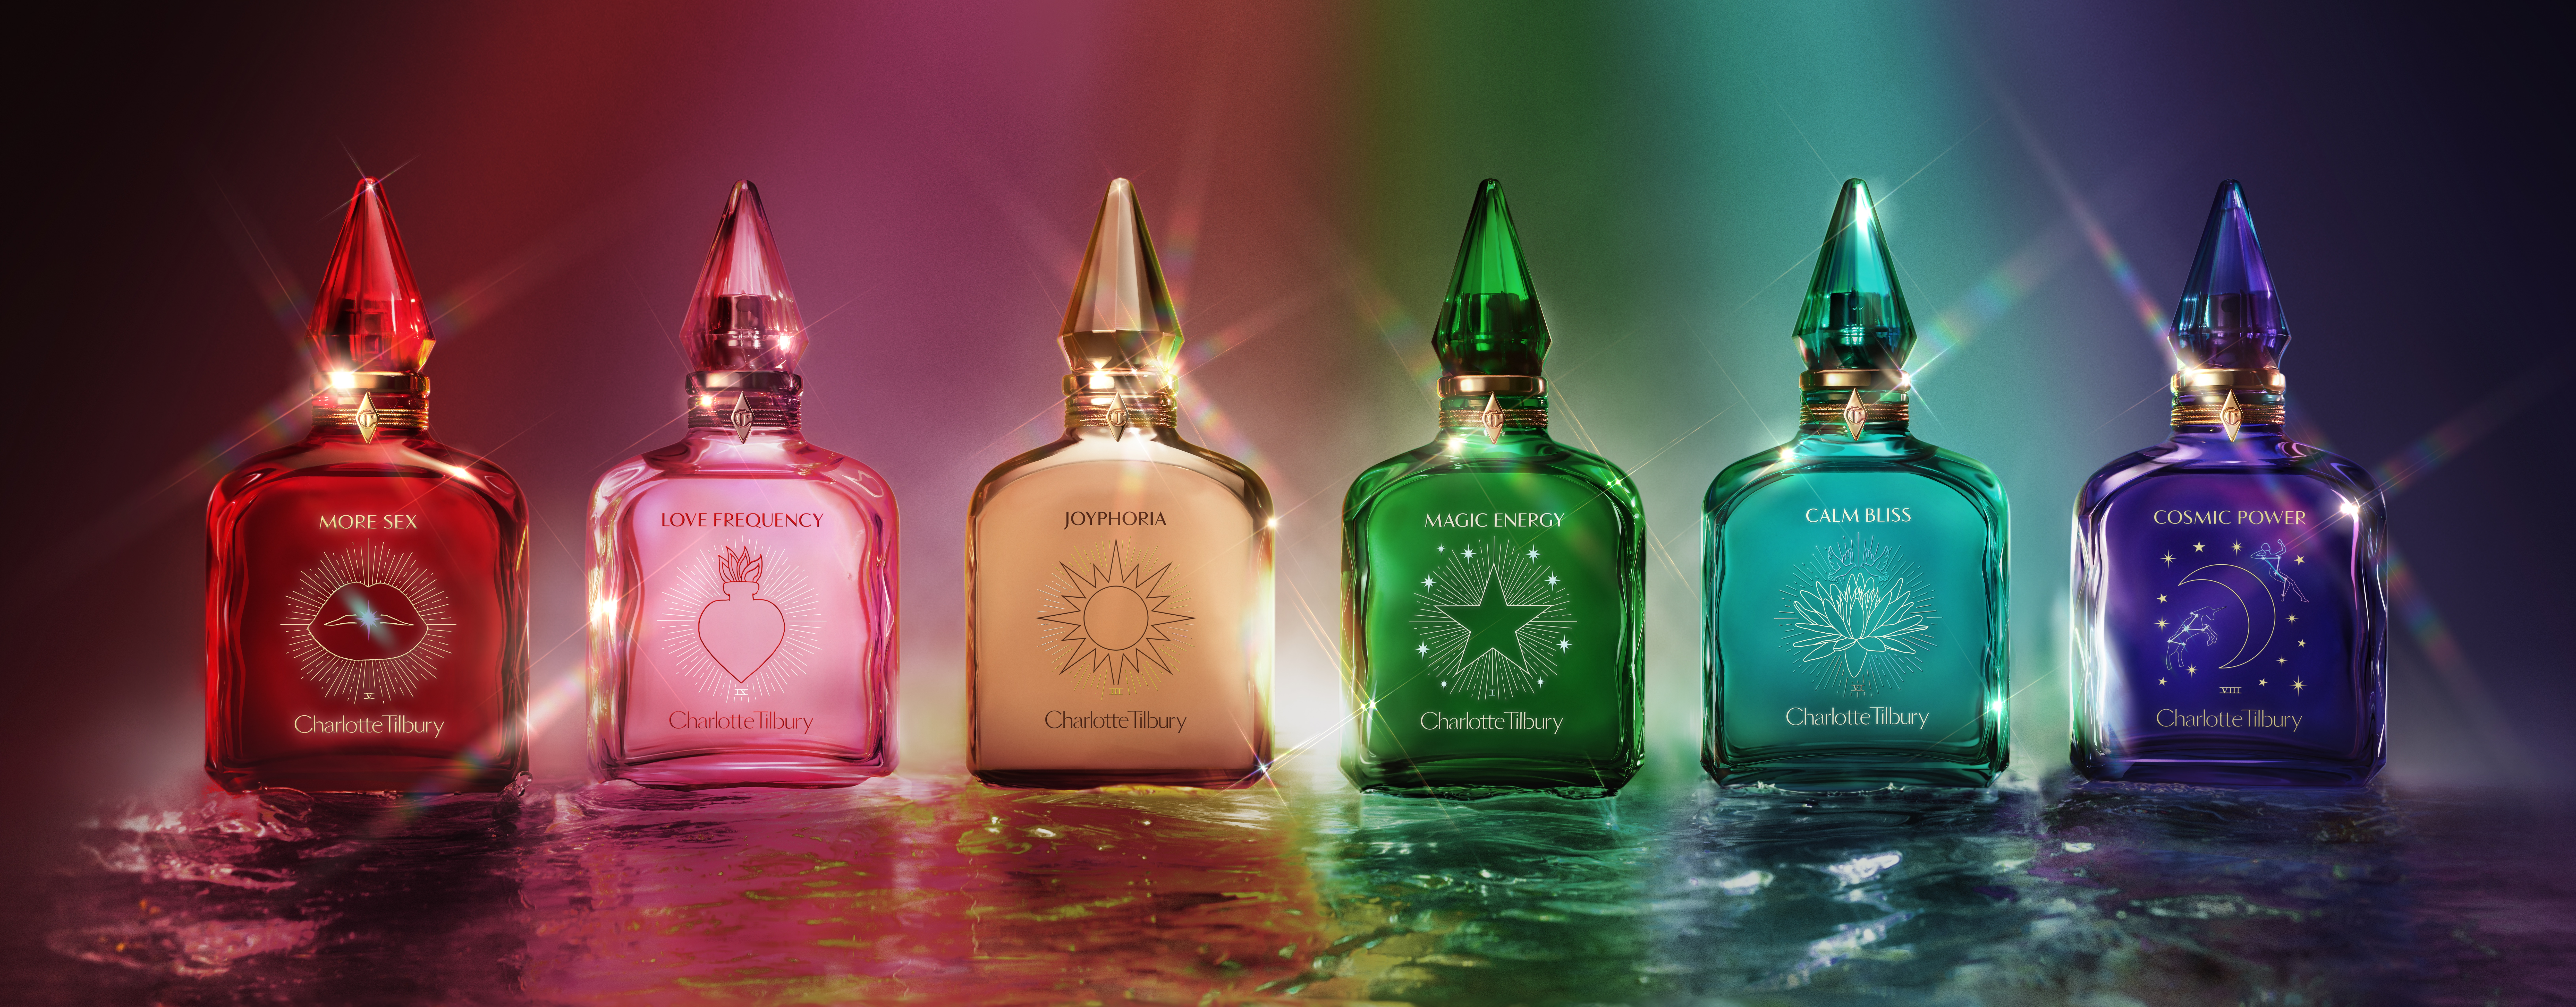 Image de groupe de la collection de parfums